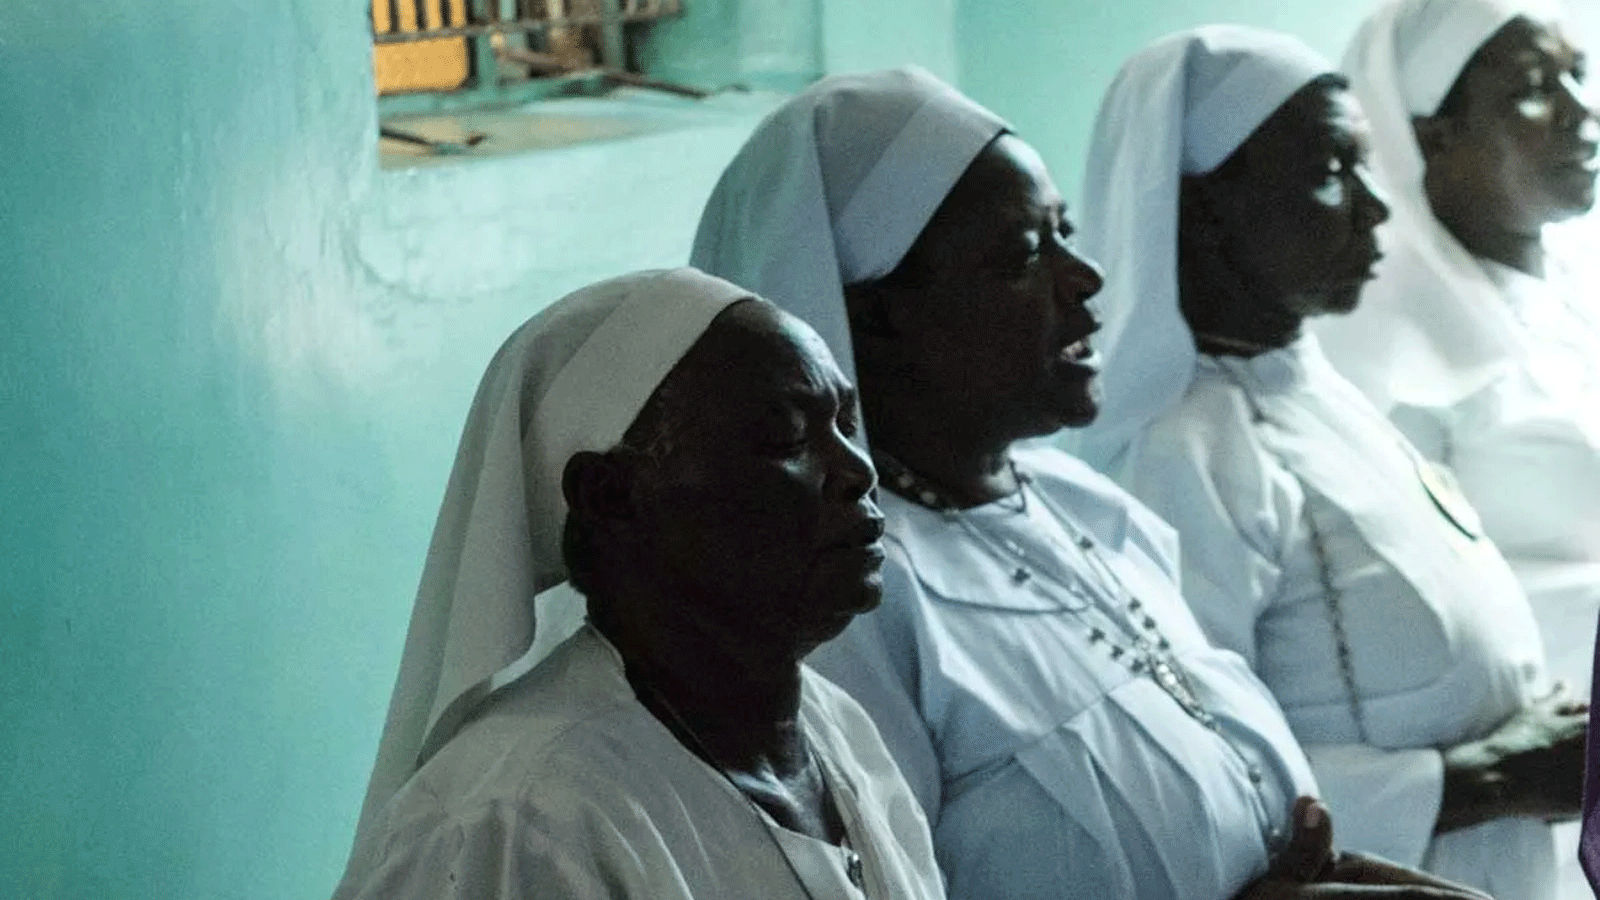 جرائم الخطف في نيجيريا لا تحترم المتدينين فيما ازدادت التعديات على معتنقي الديانة المسيحية